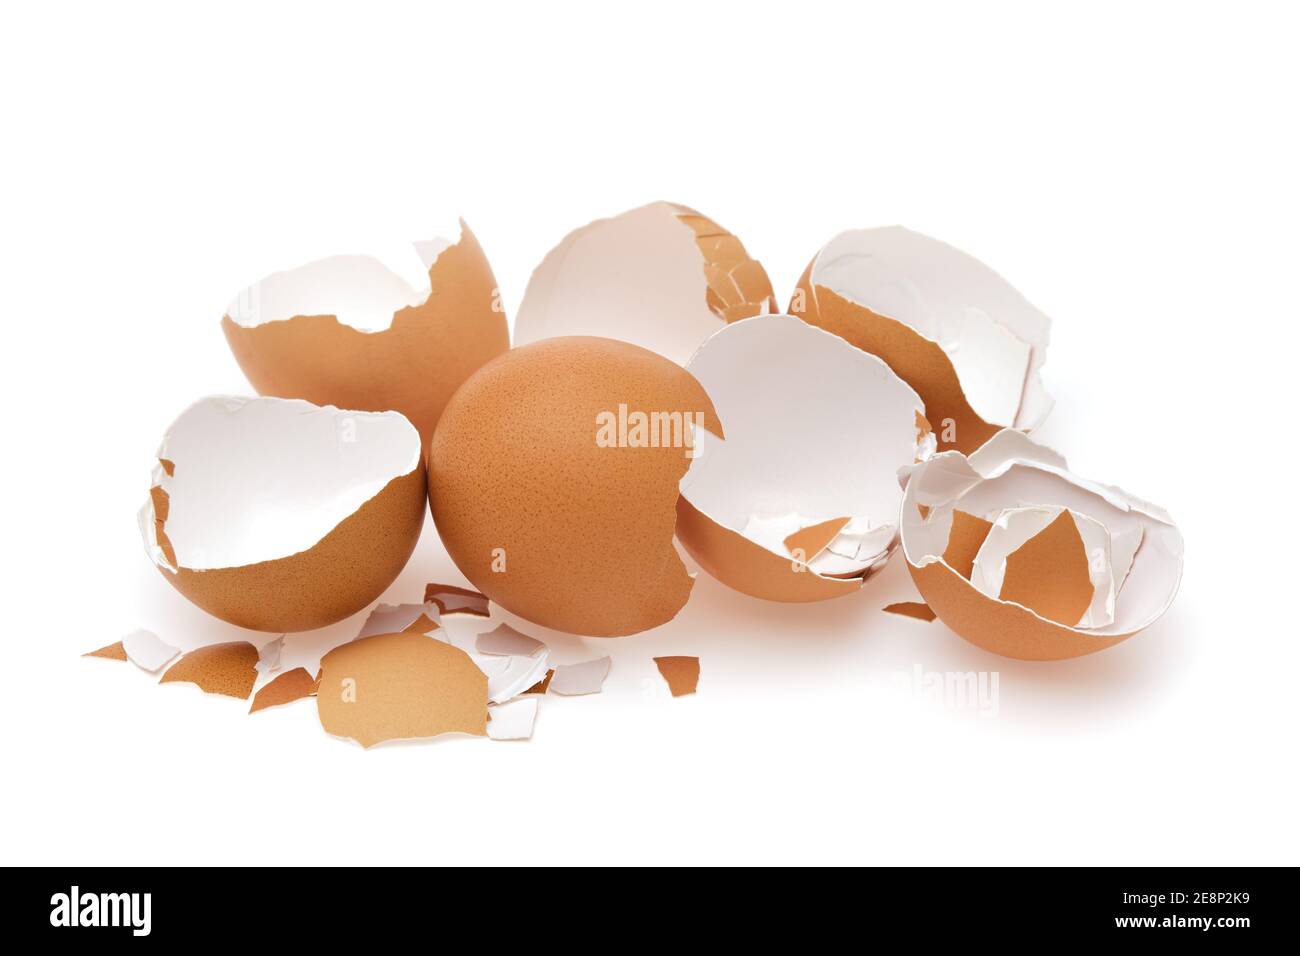 Eggshell. Shell of eggs on white. Stock Photo